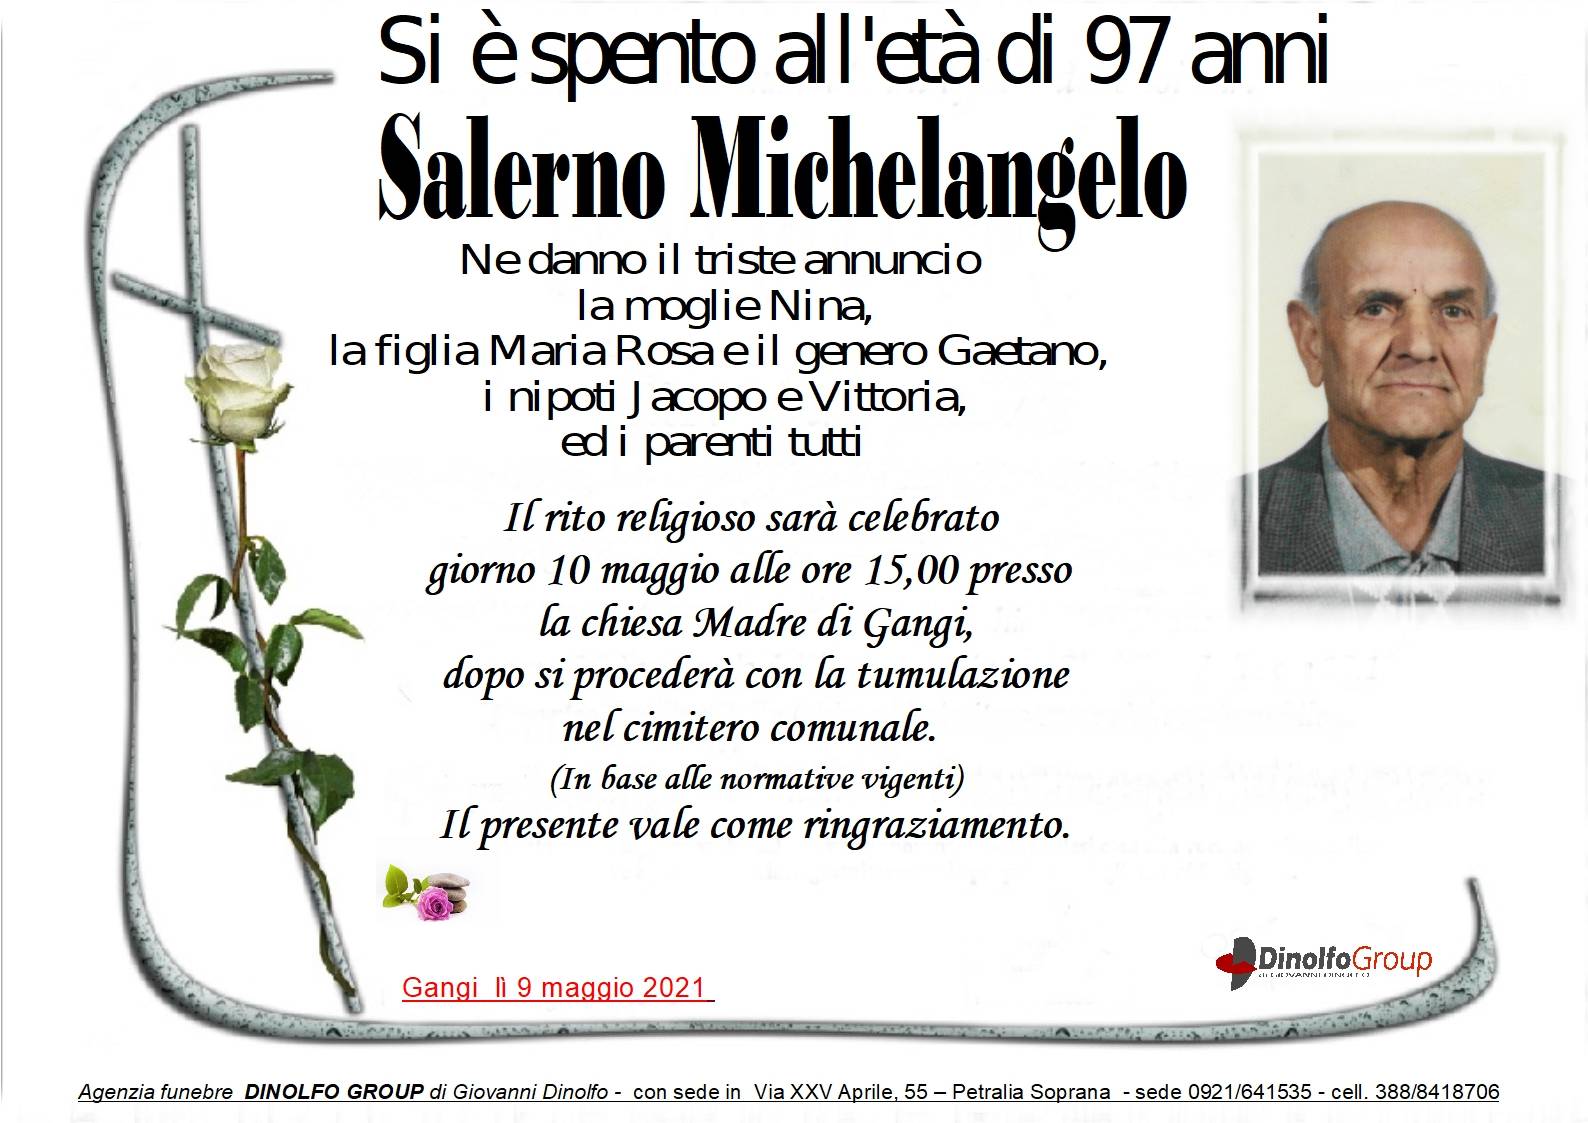 Michelangelo Salerno